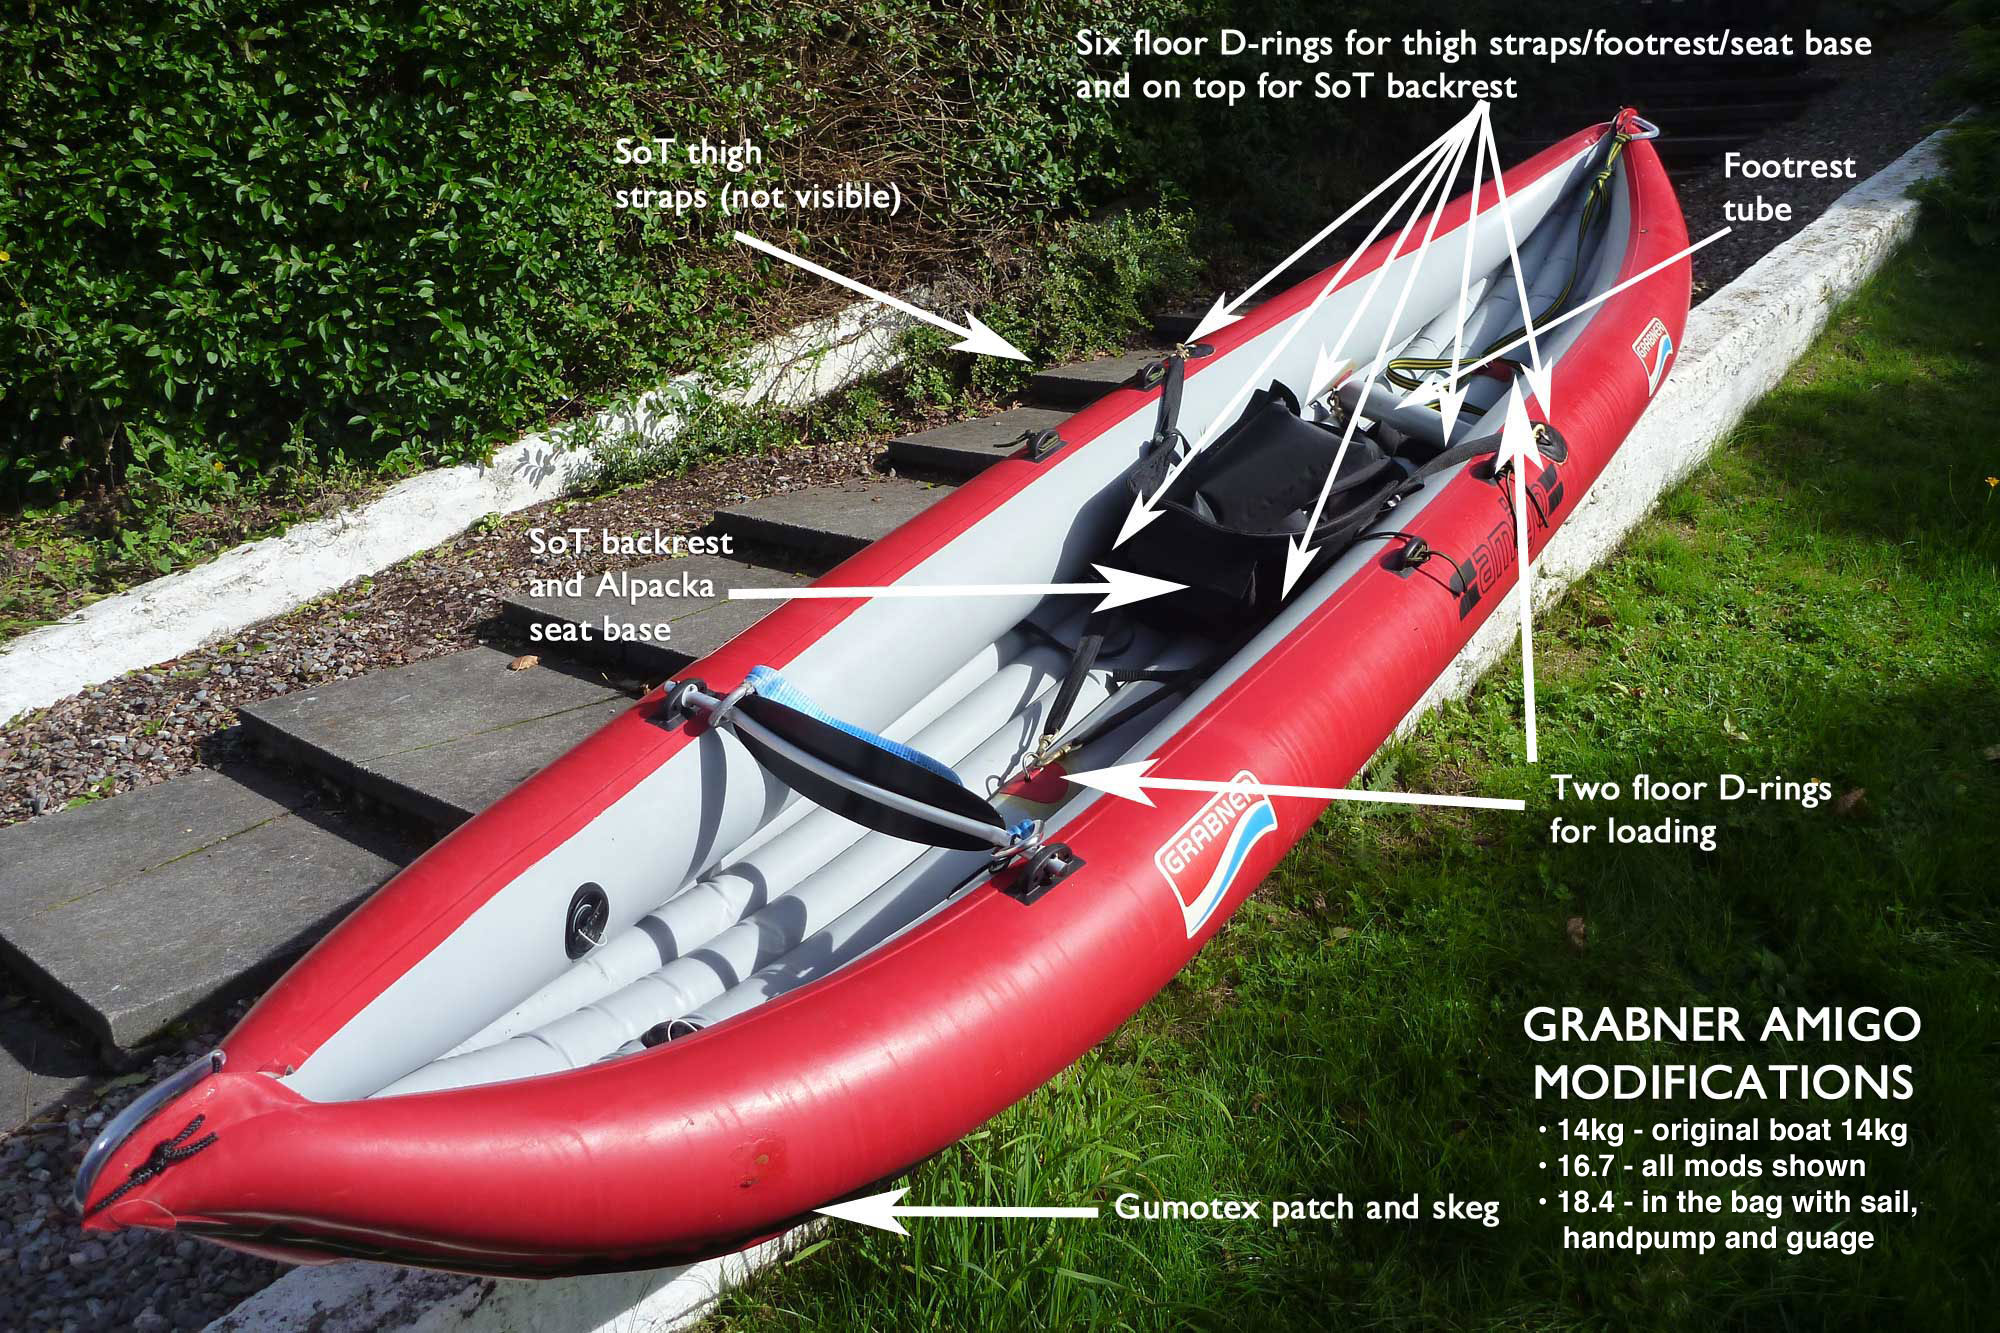 Grabner Amigo kayak modifications | Inflatable Kayaks 